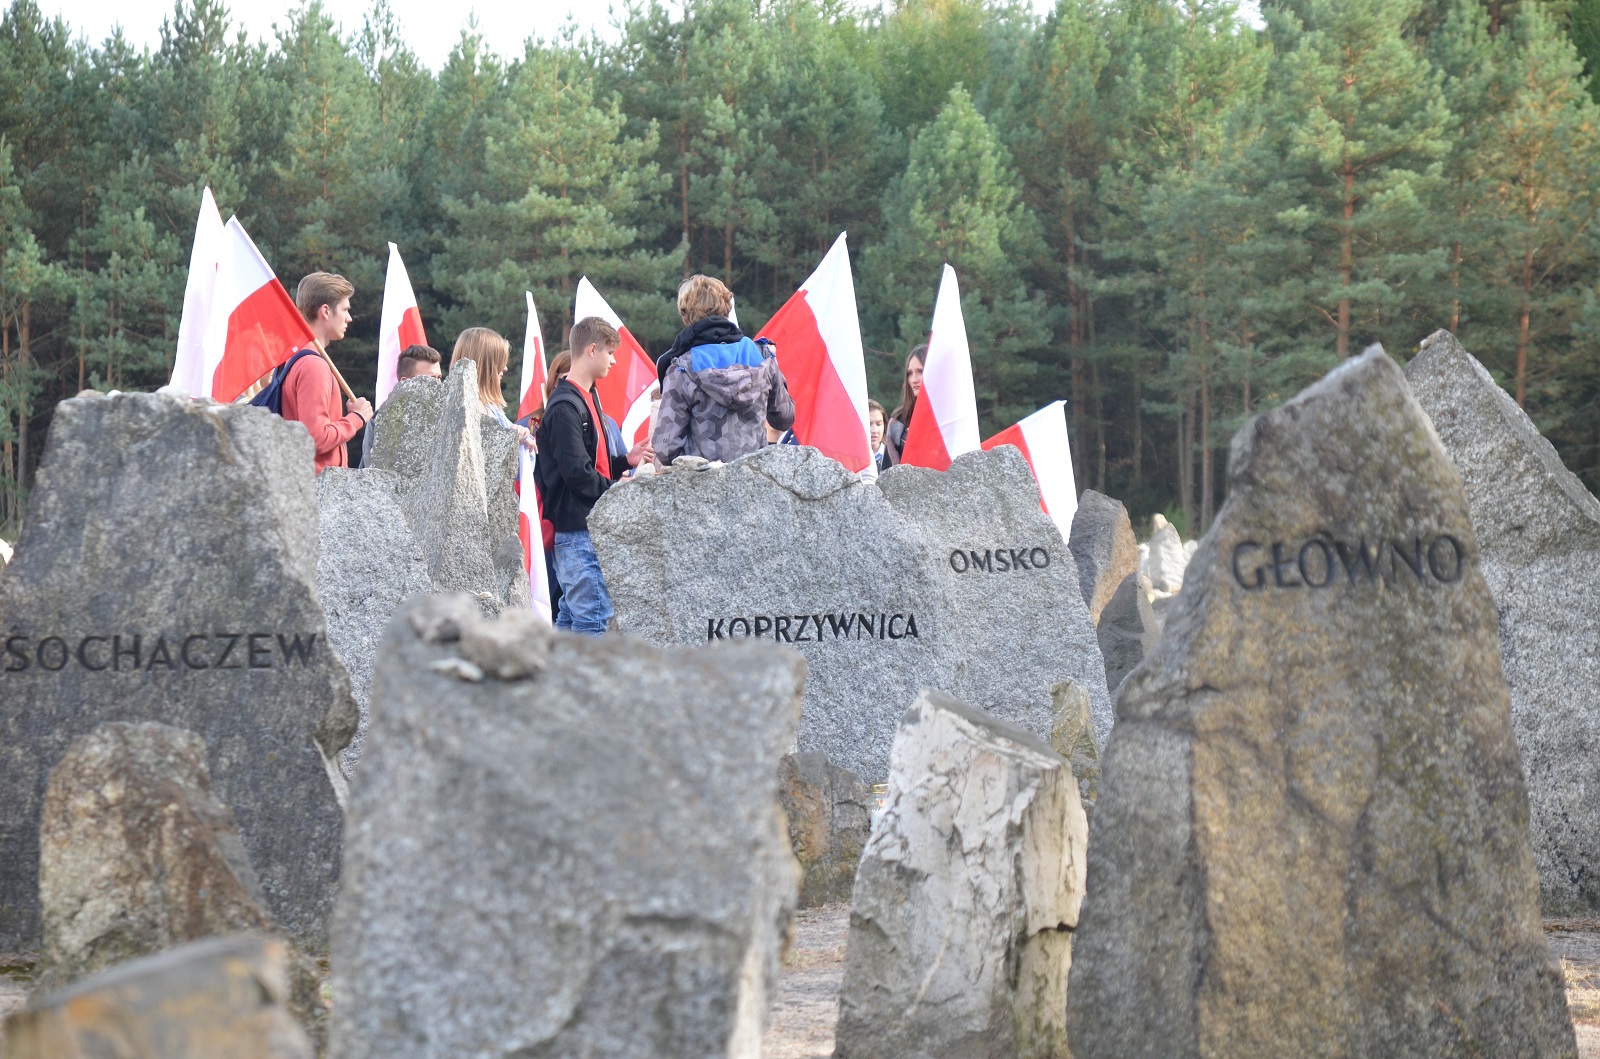 Jesteśmy razem - pamięci ofiar pomordowanych w Treblince. Nagrobki żydowskie. W tle ludzie z polskimi flagami.